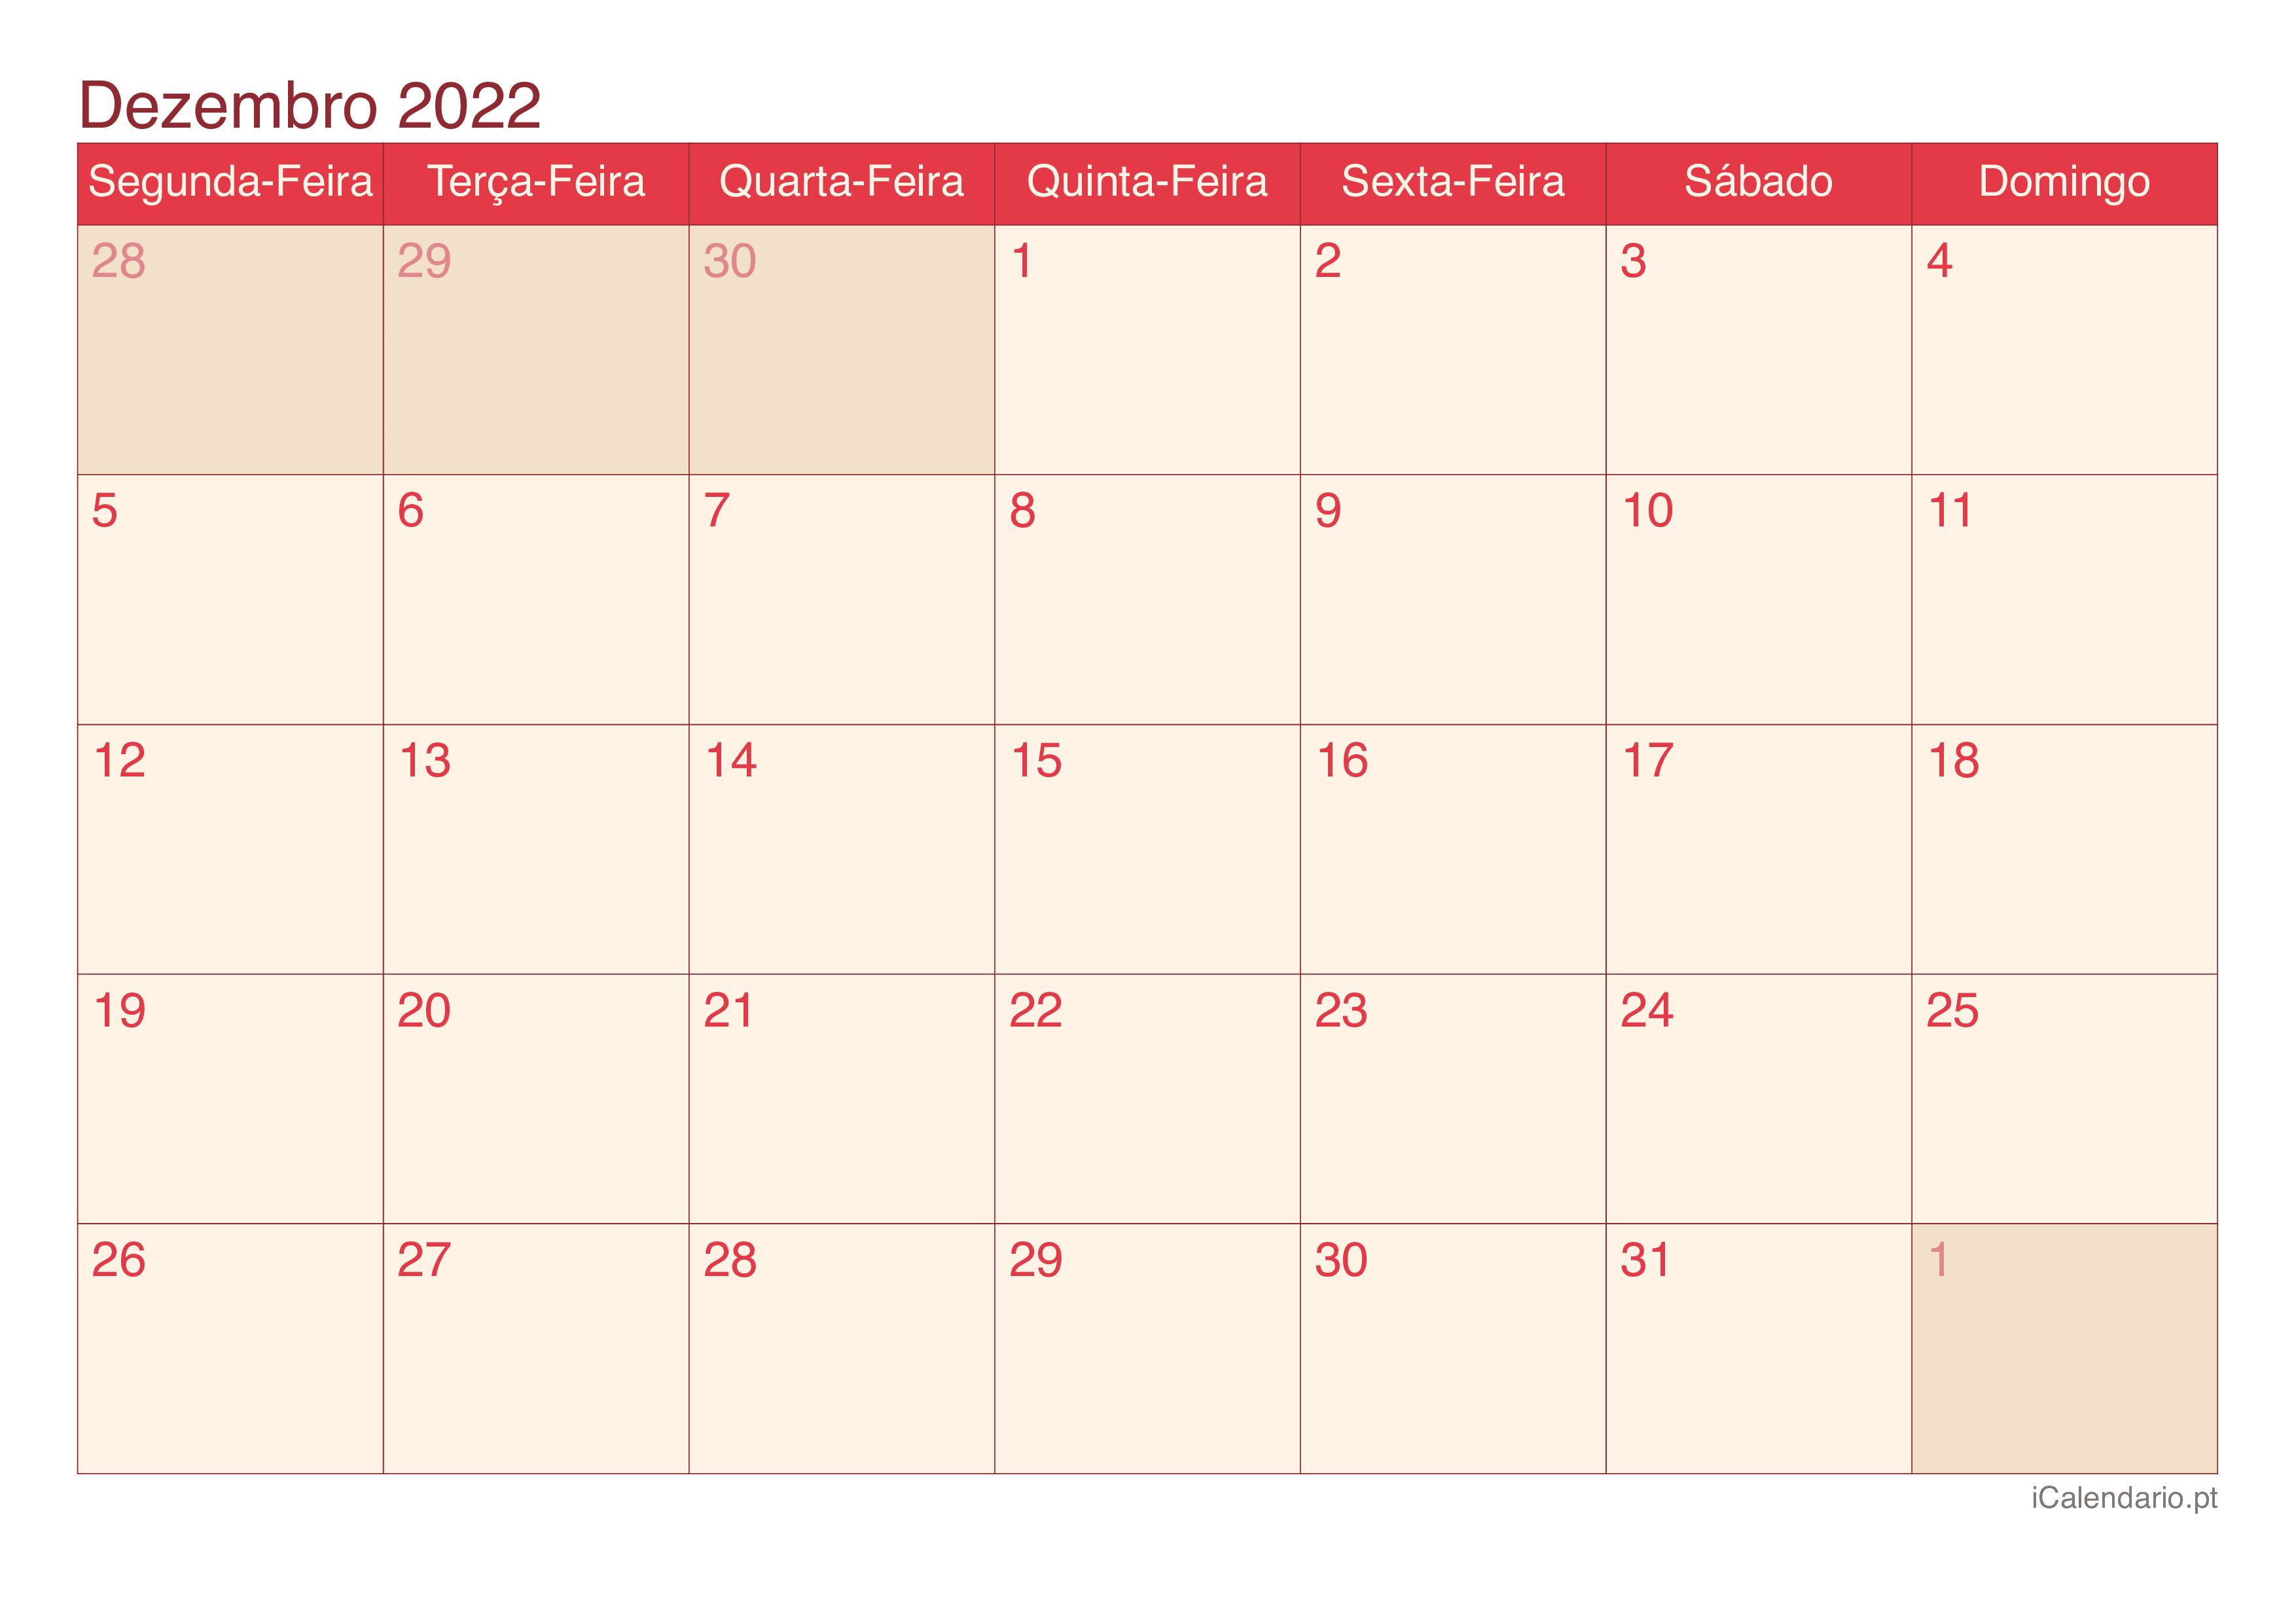 Calendário de dezembro 2022 - Cherry